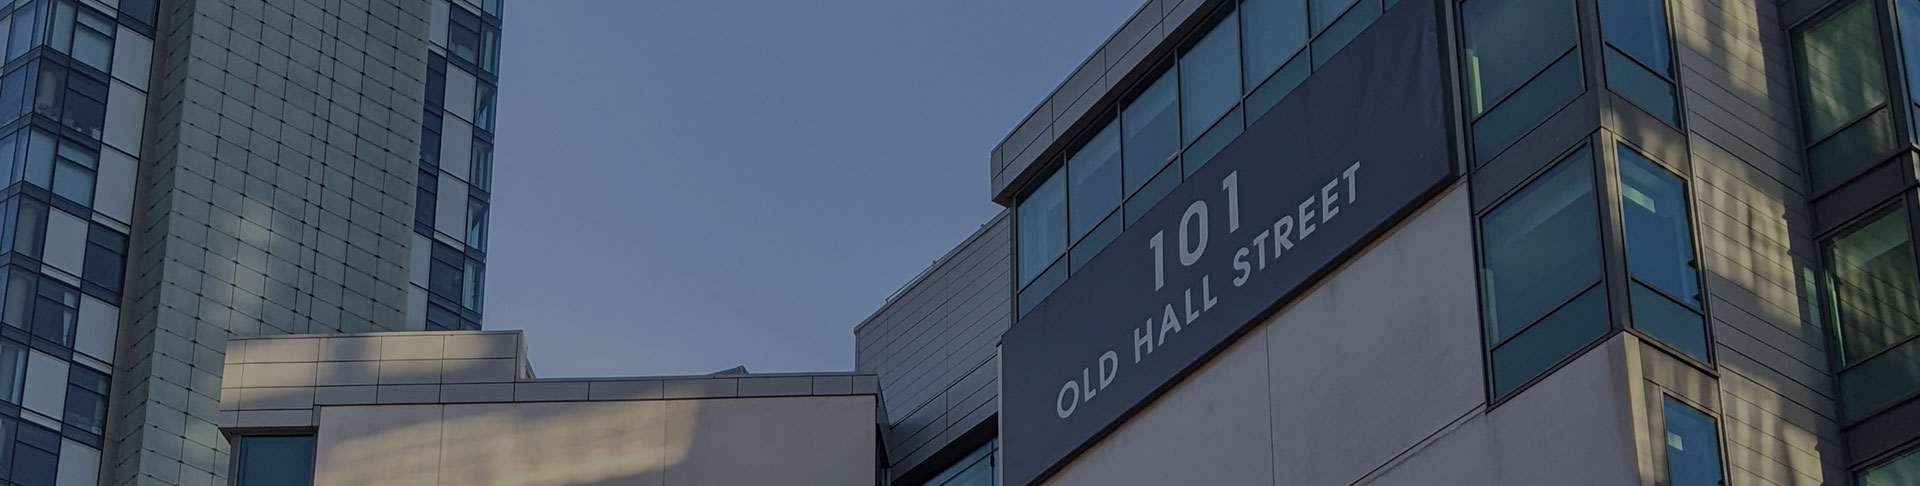 101 Old Hall Street